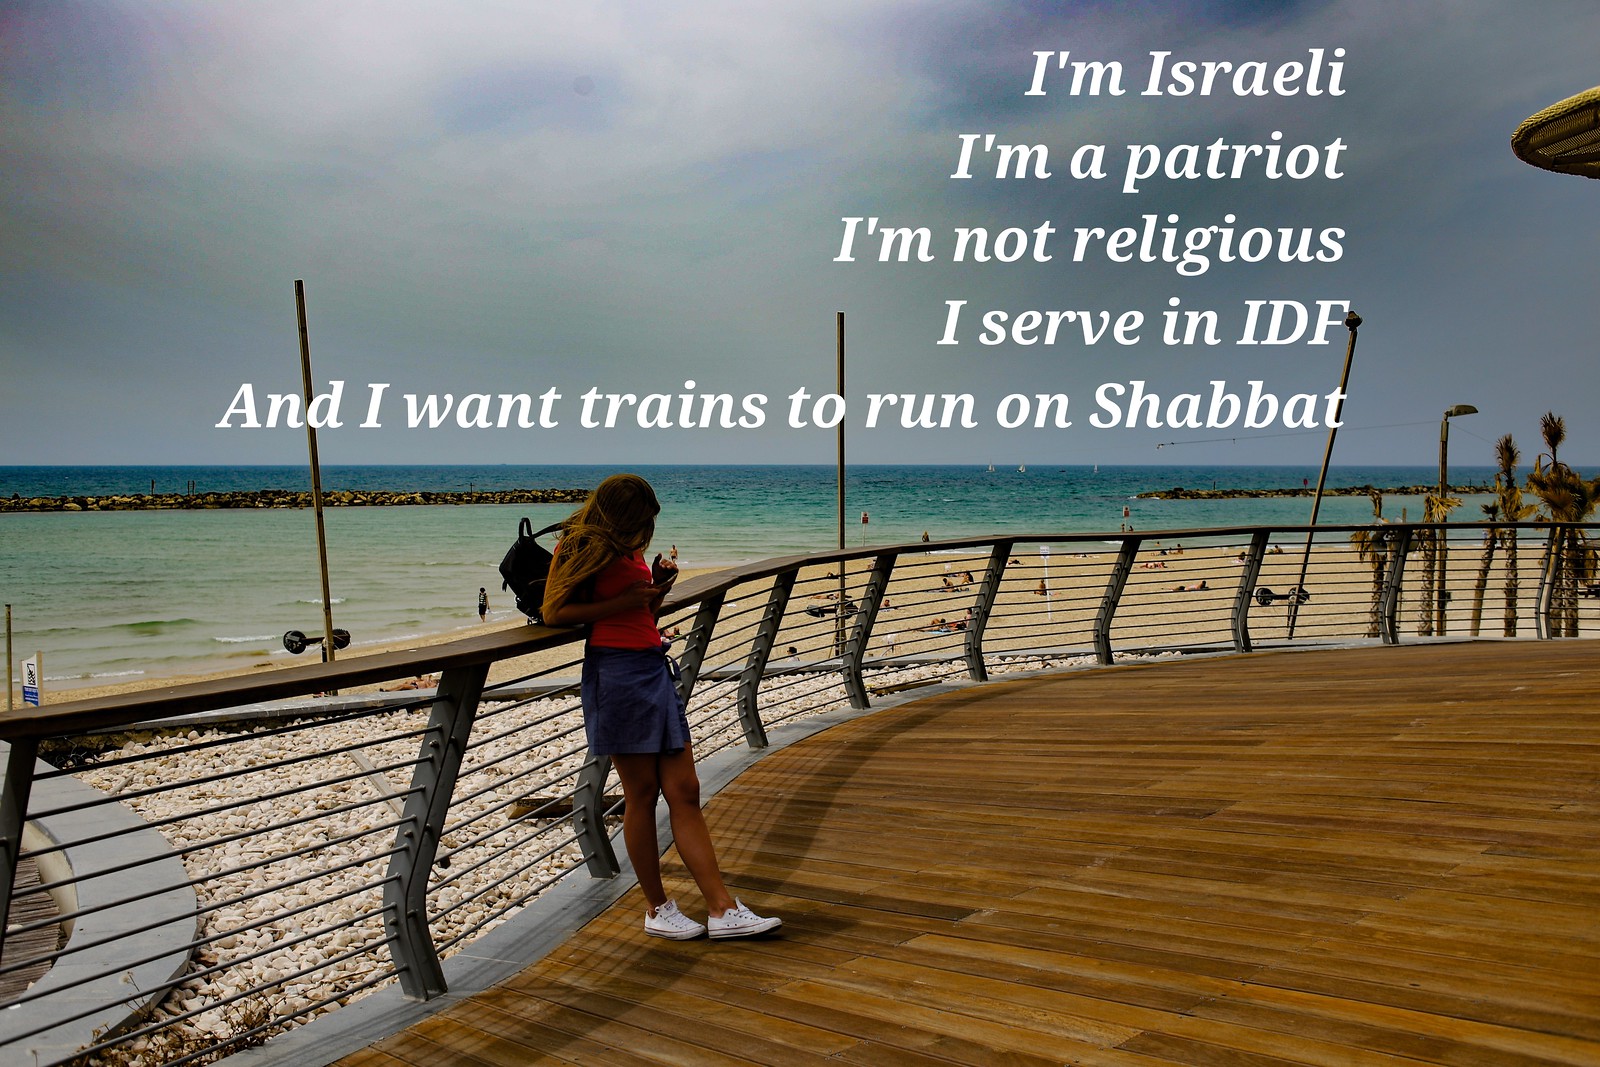 I want trains to run on Shabbat